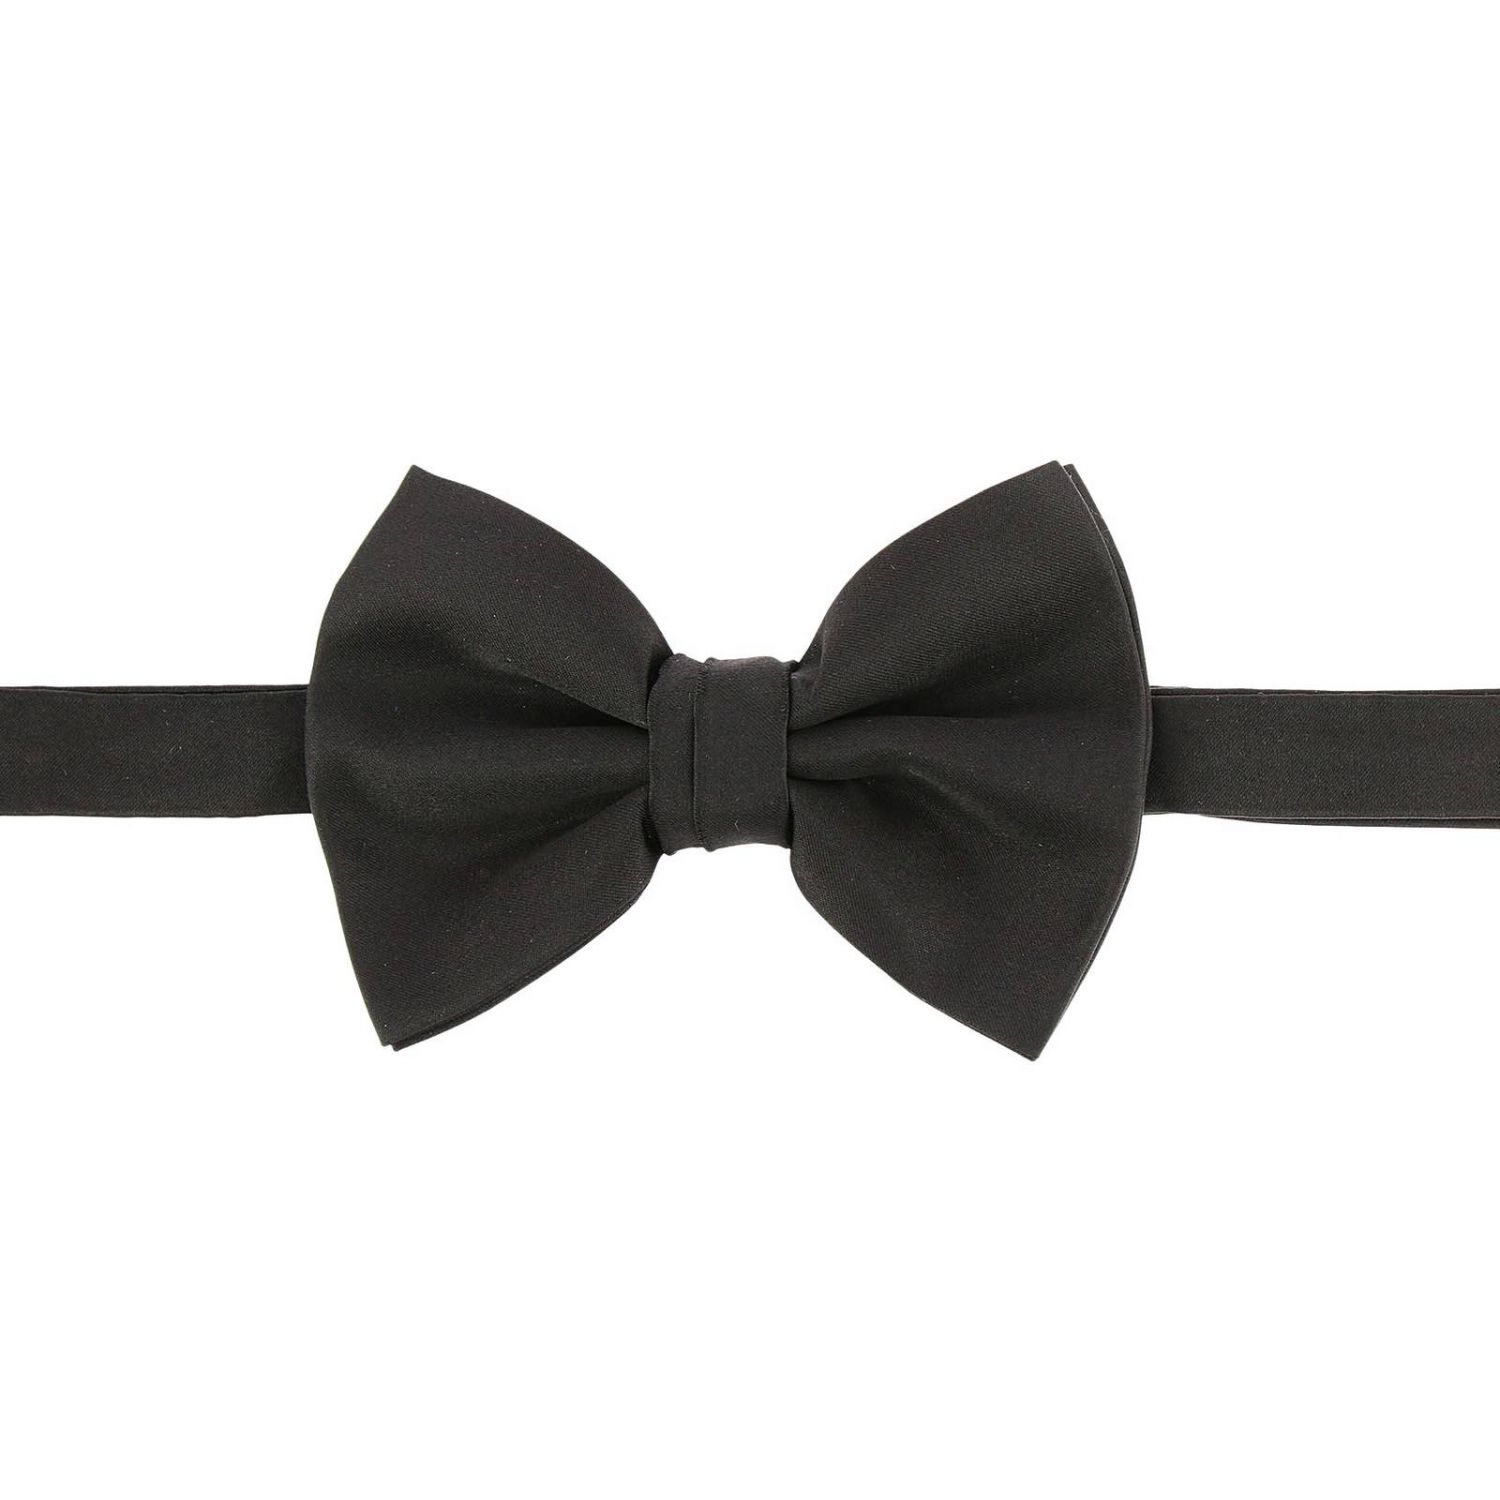 Emporio Armani Outlet: Bow tie men - Black | Bow Tie Emporio Armani ...